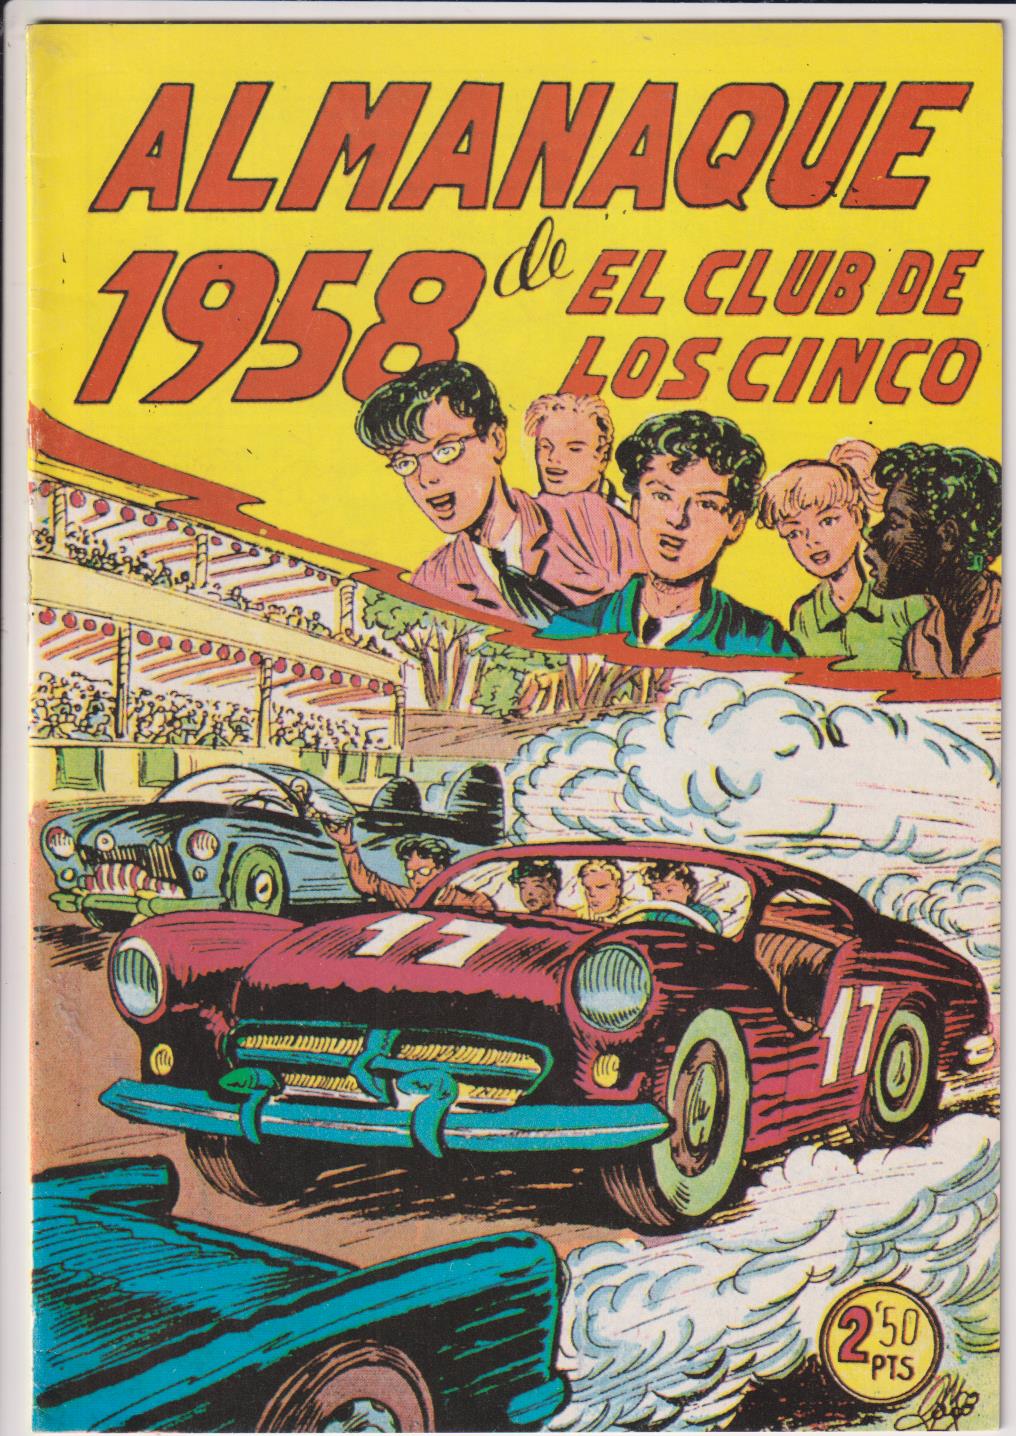 Almanaque El Club de los Cinco 1958. Reedición